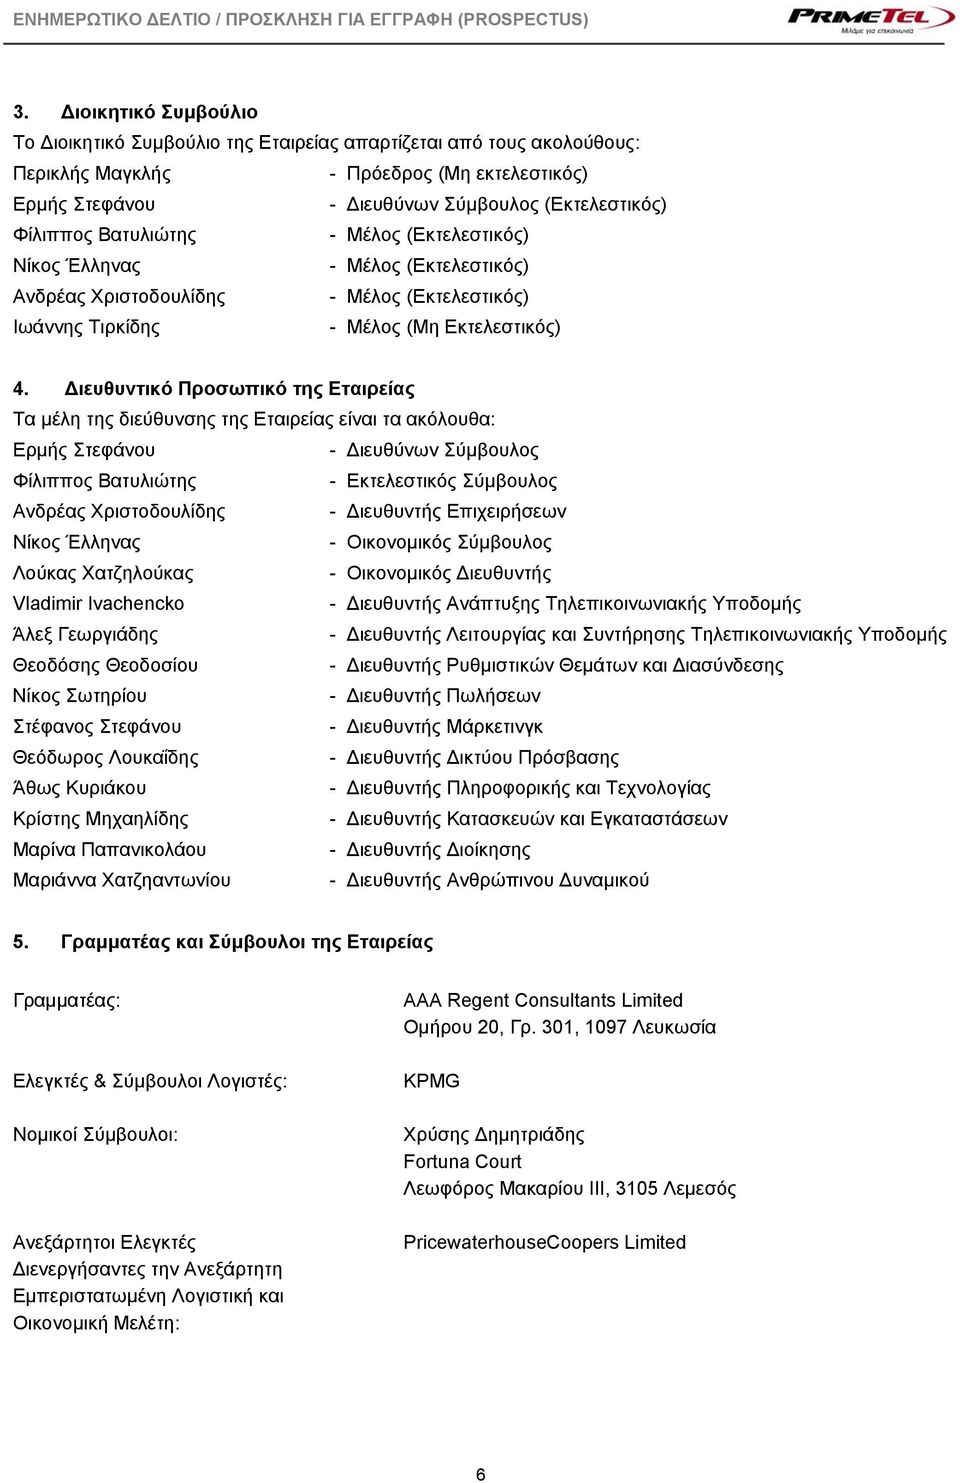 Διευθυντικό Προσωπικό της Εταιρείας Τα μέλη της διεύθυνσης της Εταιρείας είναι τα ακόλουθα: Ερμής Στεφάνου - Διευθύνων Σύμβουλος Φίλιππος Βατυλιώτης - Εκτελεστικός Σύμβουλος Ανδρέας Χριστοδουλίδης -